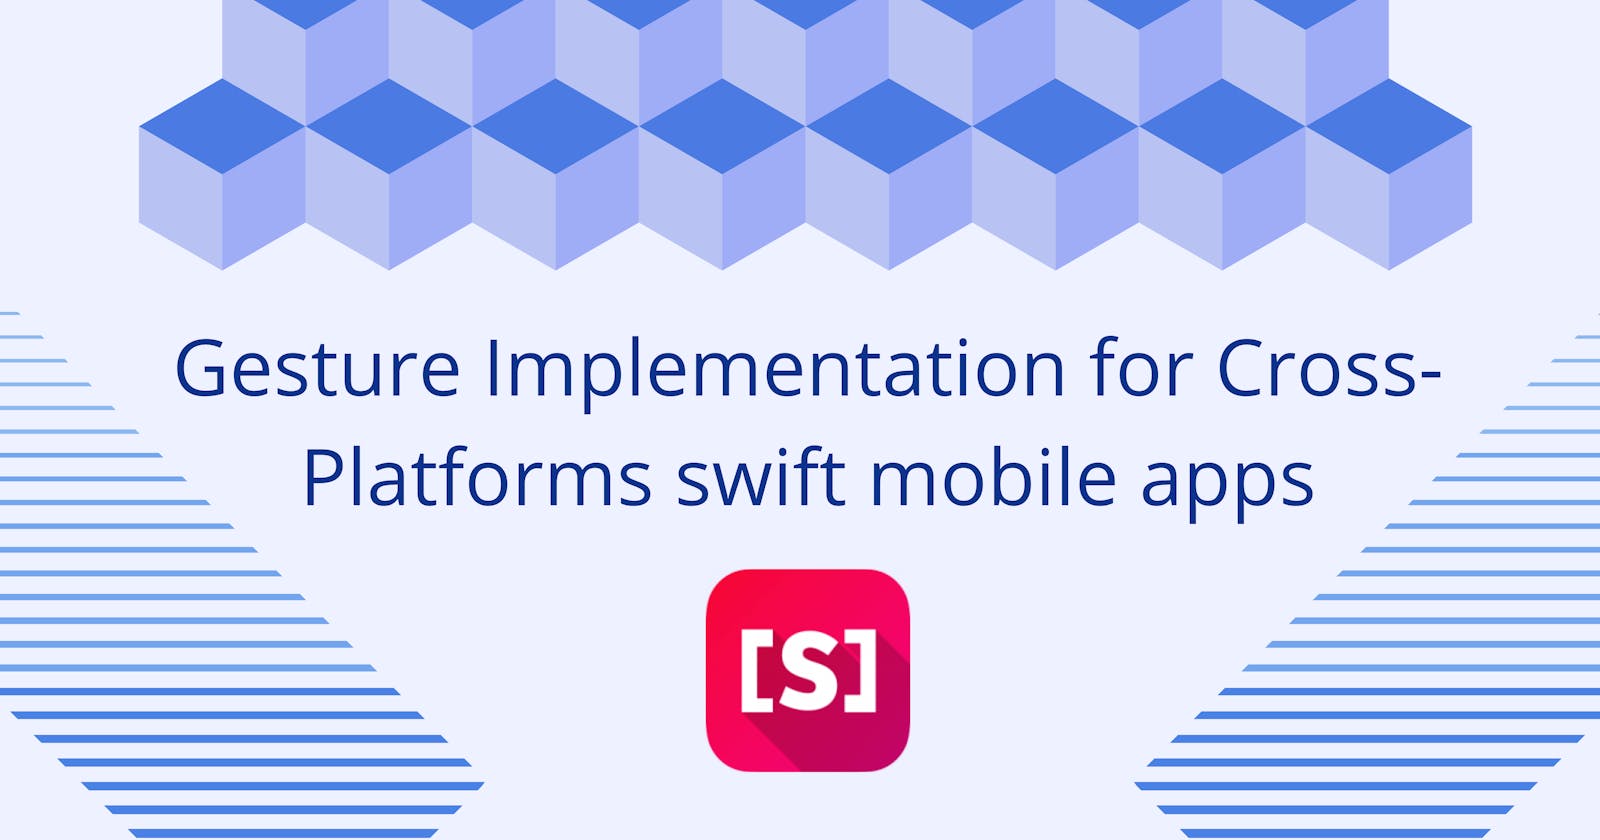 Gesture Implementation for Cross Platform native Swift mobile apps